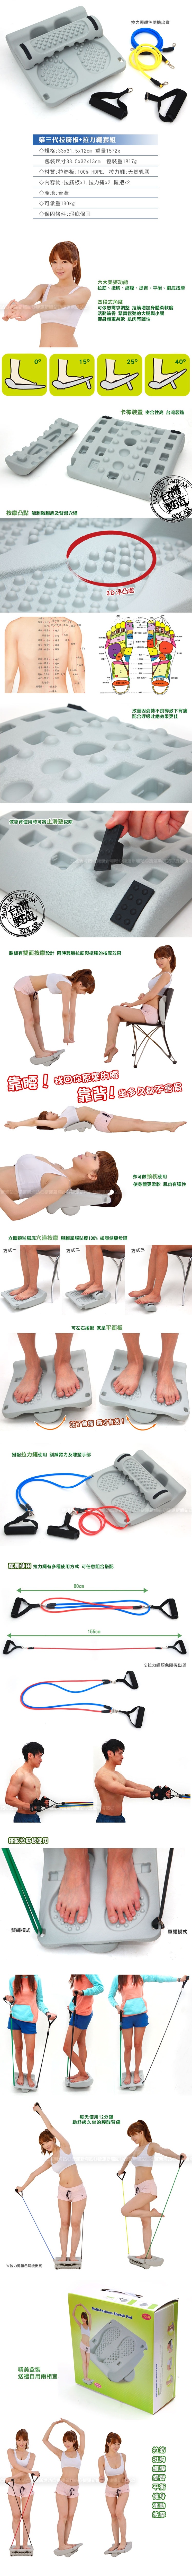 按摩足底拉筋板第三代+拉力繩套組.可調式肌肉筋膜瑜珈拉筋凳運動平衡舒緩伸展背腰靠墊台灣製造